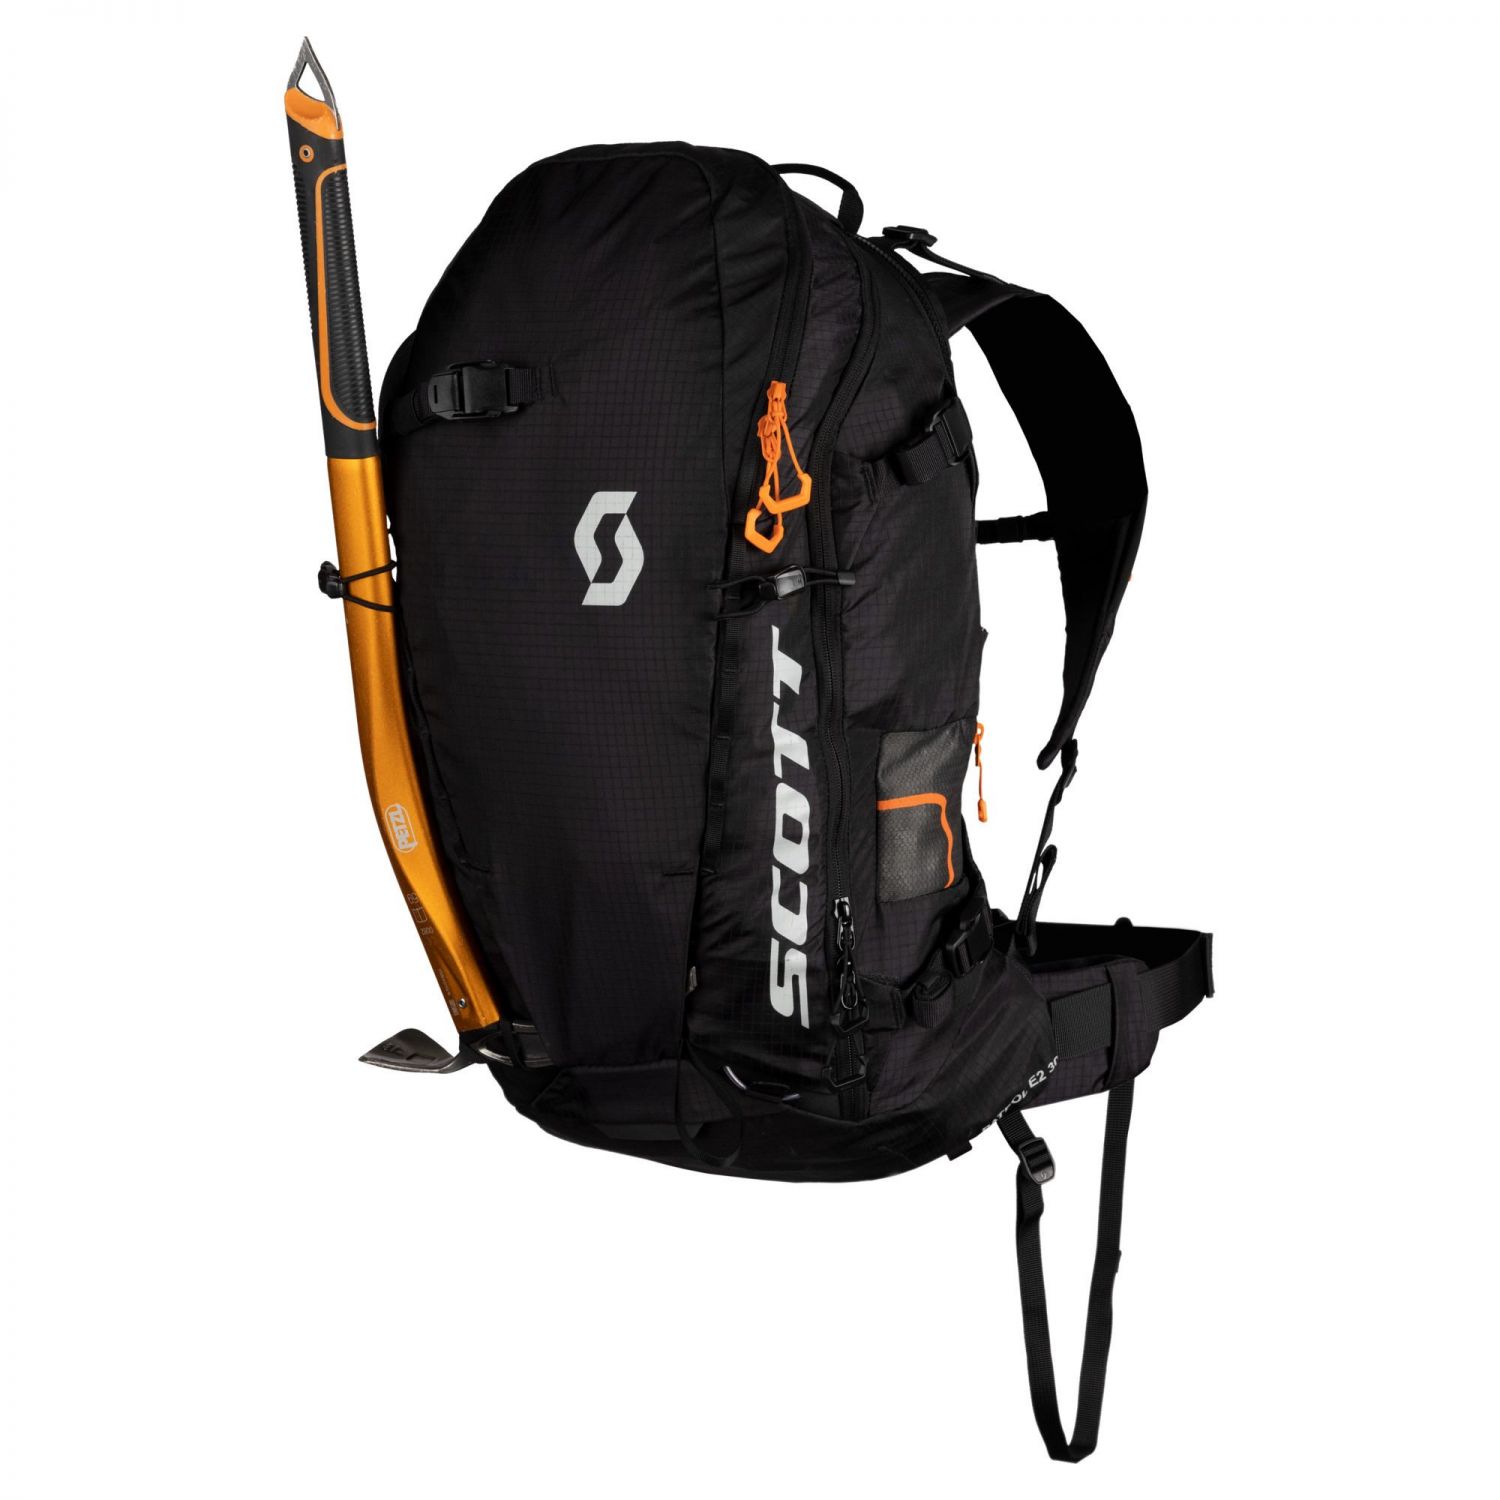 Scott Patrol E2 30 Backpack Kit, black